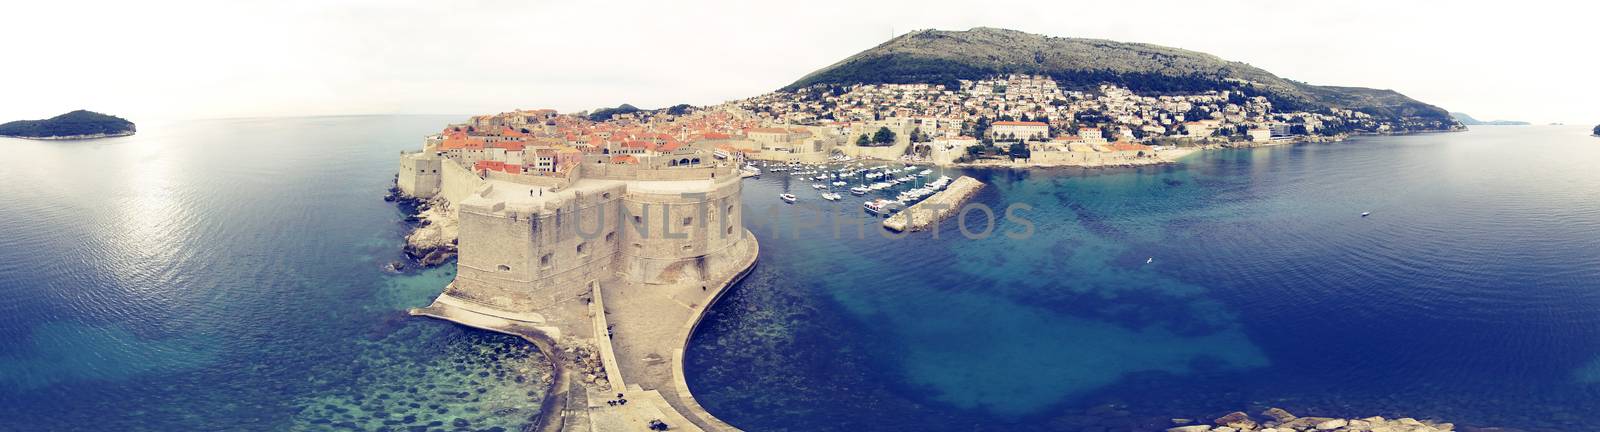 Dubrovnik by Aarstudio